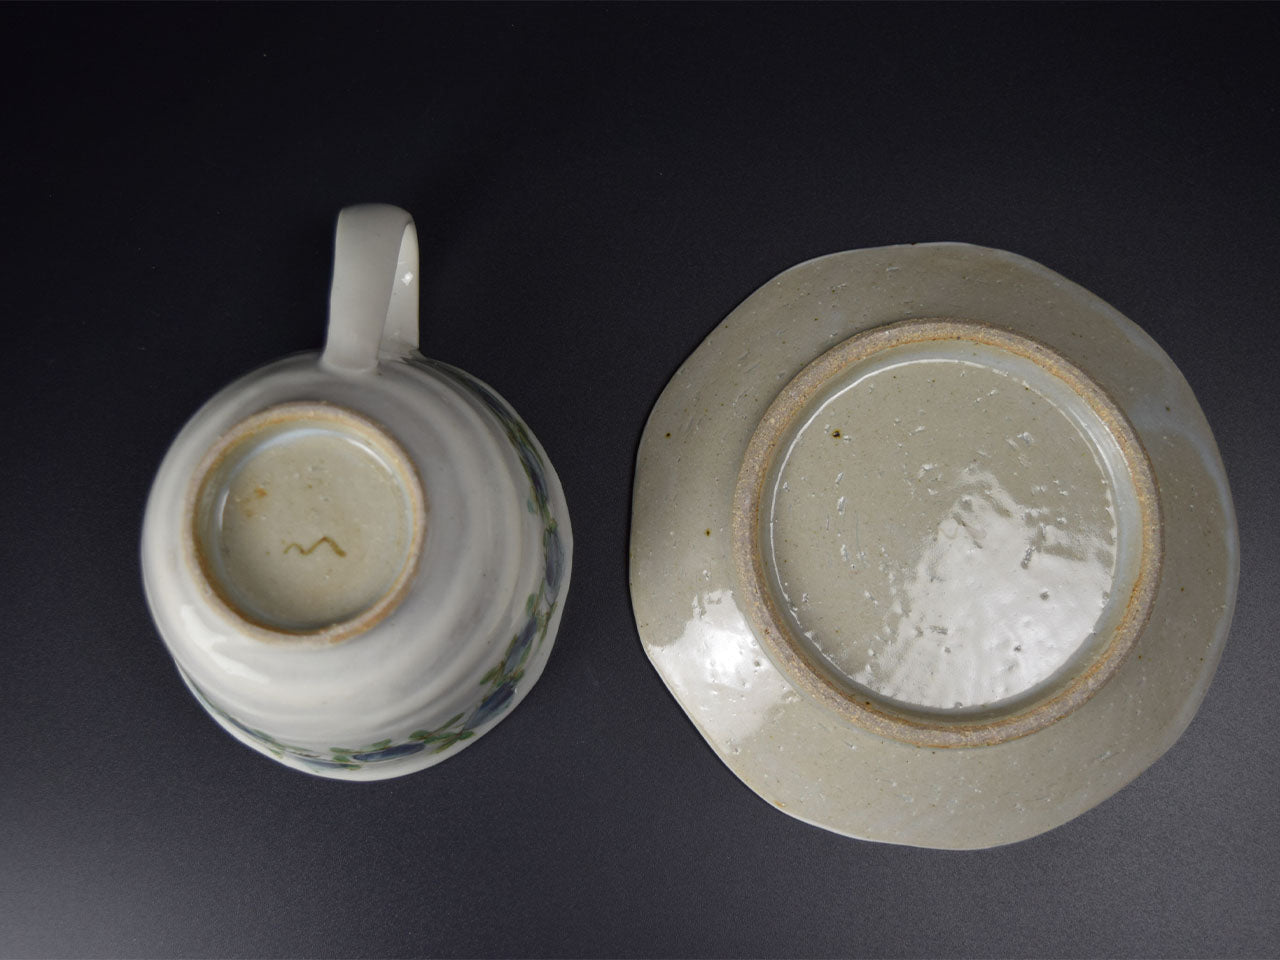 Drinkware, Teacup, Blue rose pattern - Tomoko Matsushita, Kasama ware, Ceramics